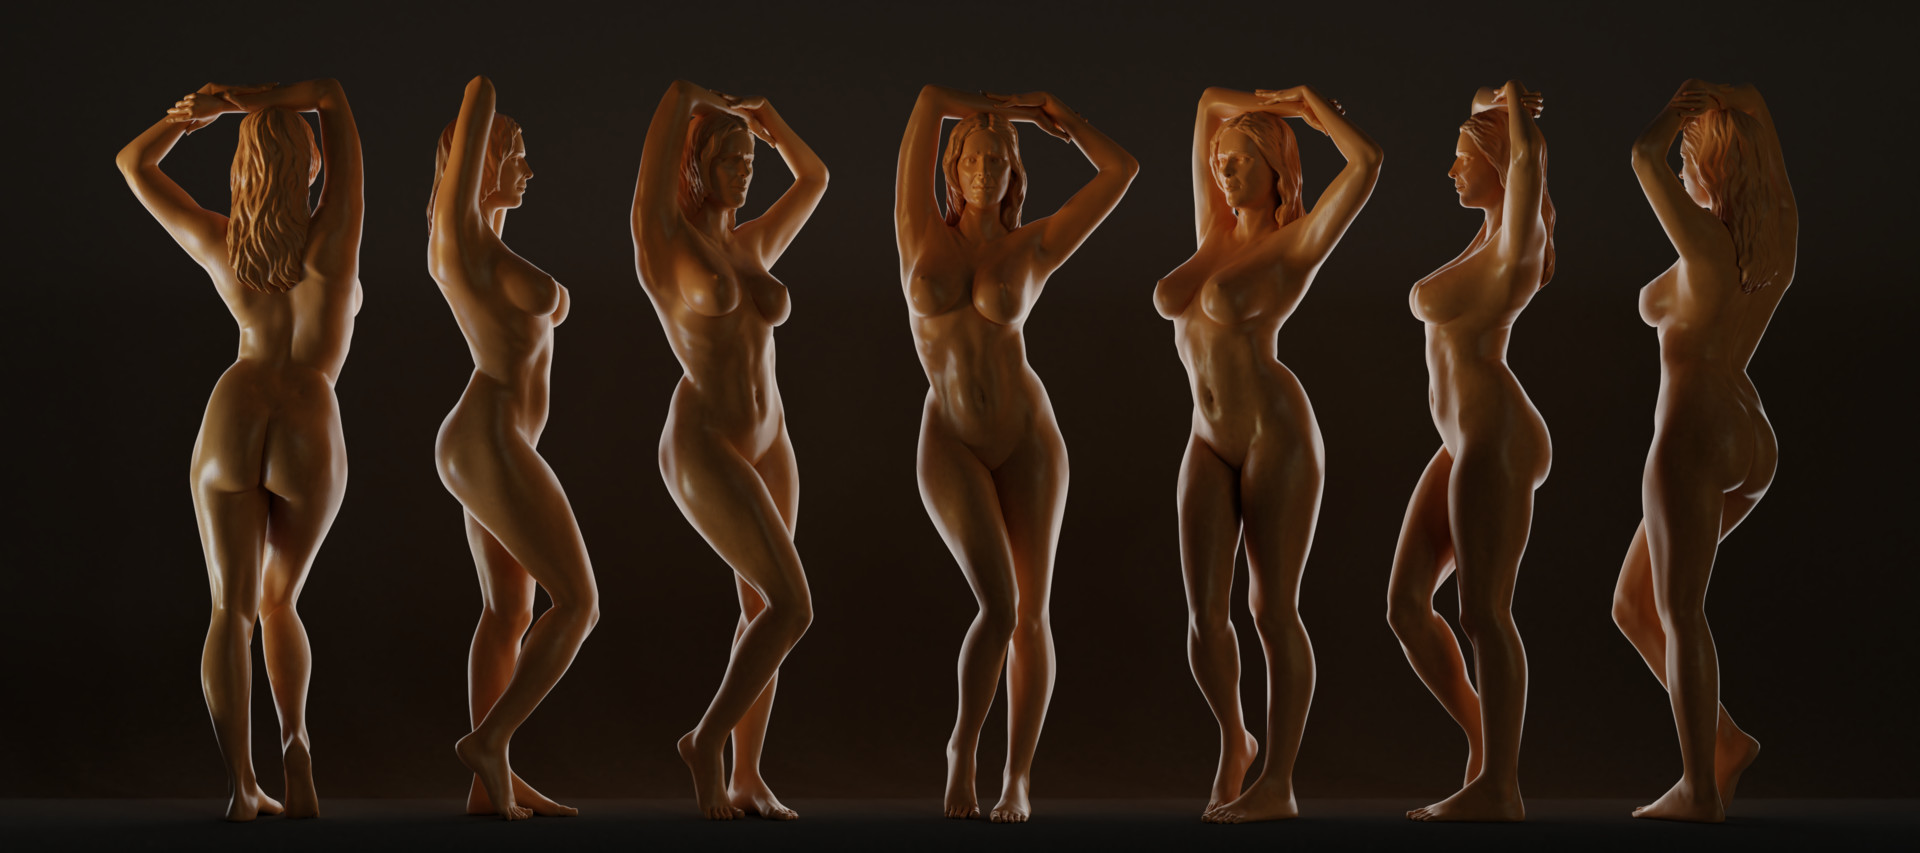 Nude model references - 🧡 Nude...31 :: Андрей Войцехов - Социальная сеть Ф...